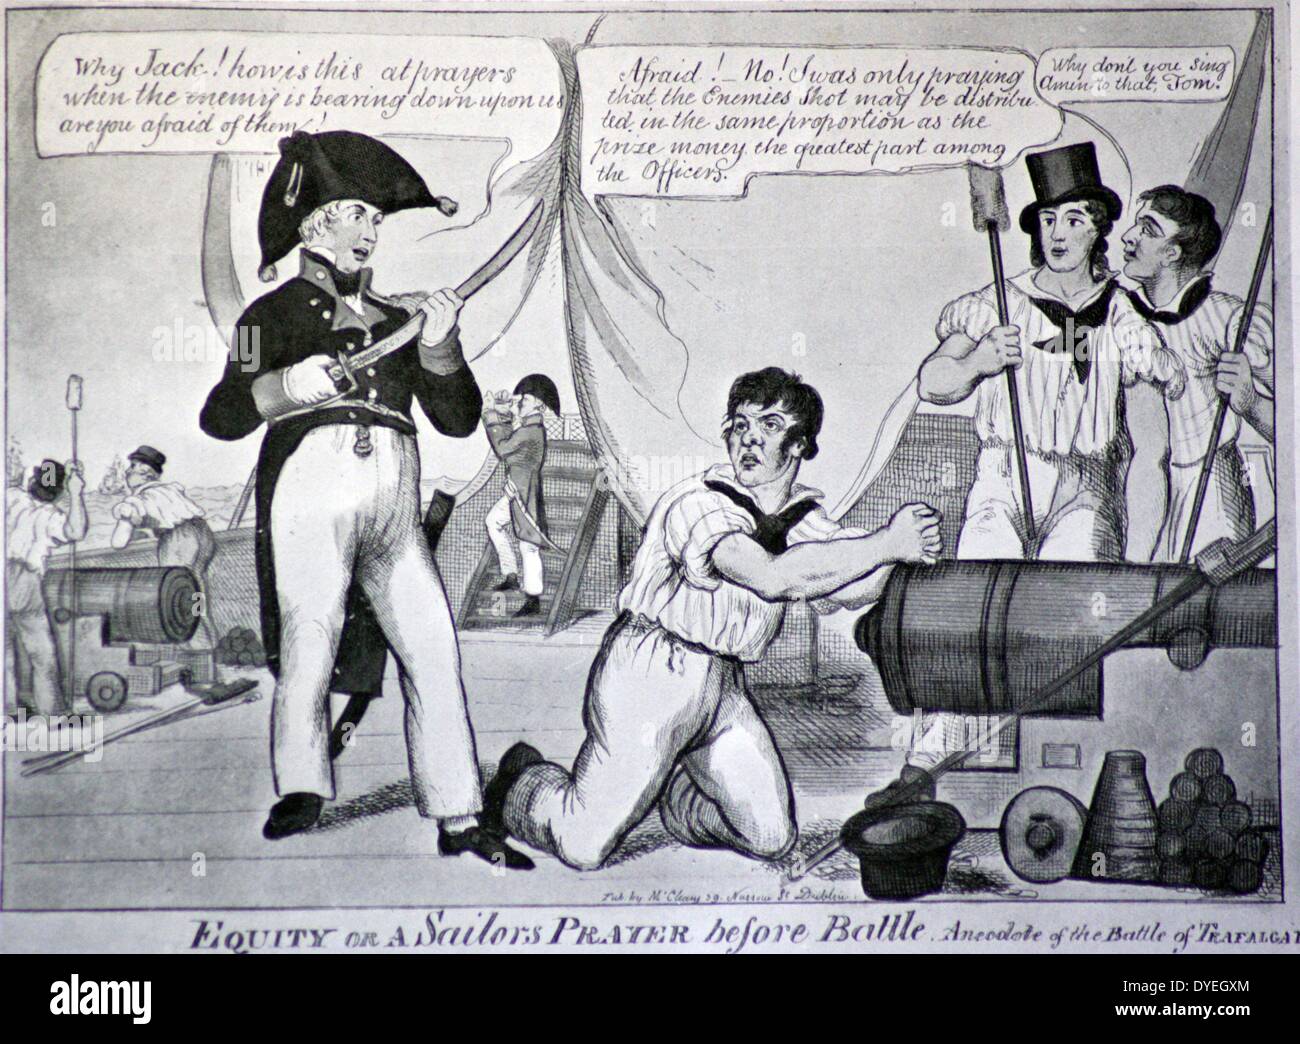 Una caricatura contemporánea - La Batalla de Trafalgar, el 21 de octubre de 1805 era un compromiso naval librada por la British Royal Navy contra las flotas combinadas de la Marina Francesa y la Armada Española, durante la Guerra de la Tercera Coalición de las guerras napoleónicas. Foto de stock